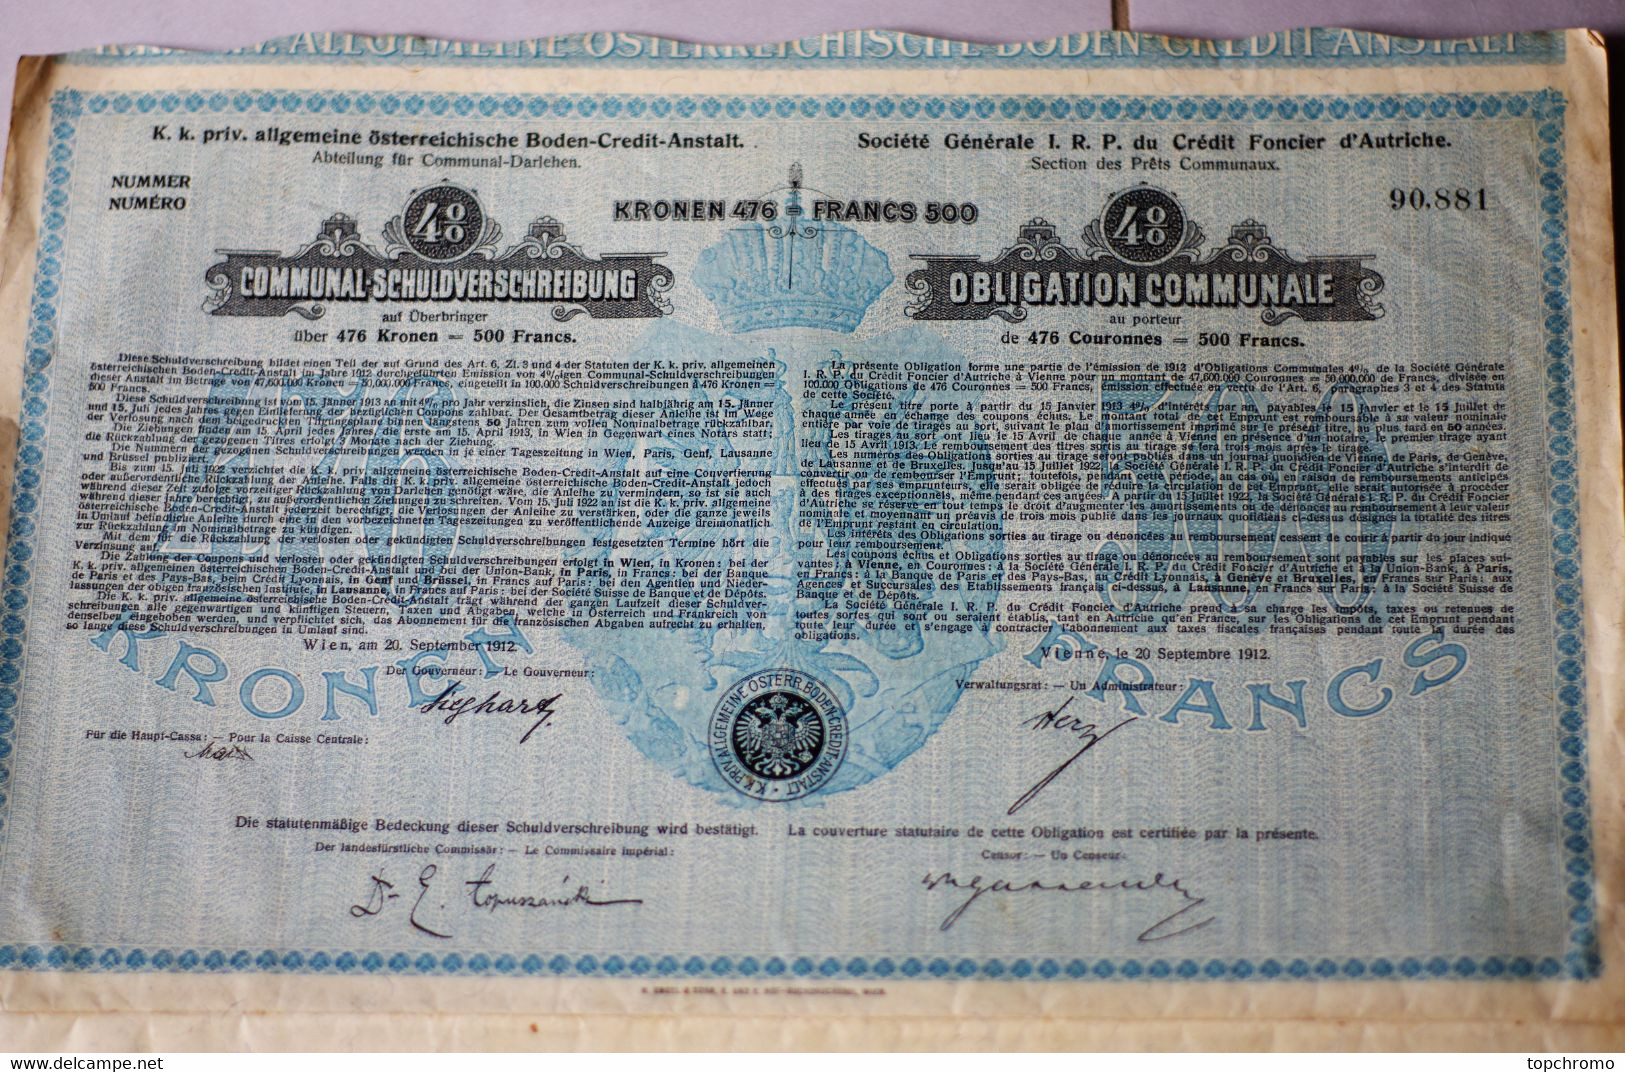 3 Actions Obligation Communale 500 Francs Crédit Foncier D'Autriche Avec 35 Coupons Par Action 1912 - Electricité & Gaz